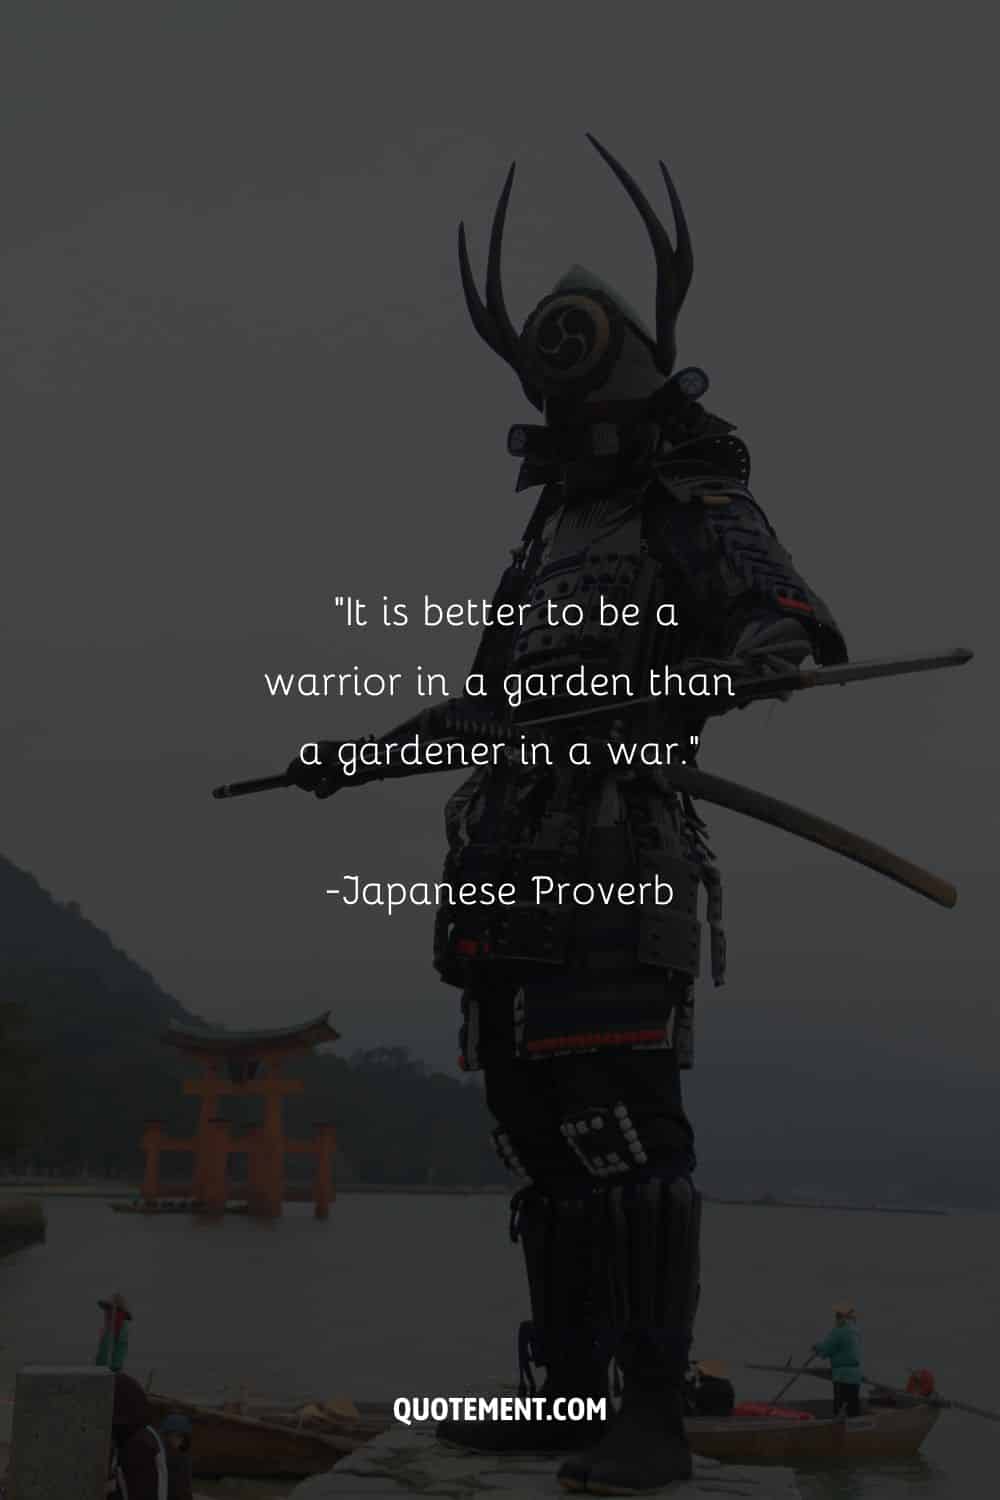 Formidable samurai warrior clad representing samurai proverb